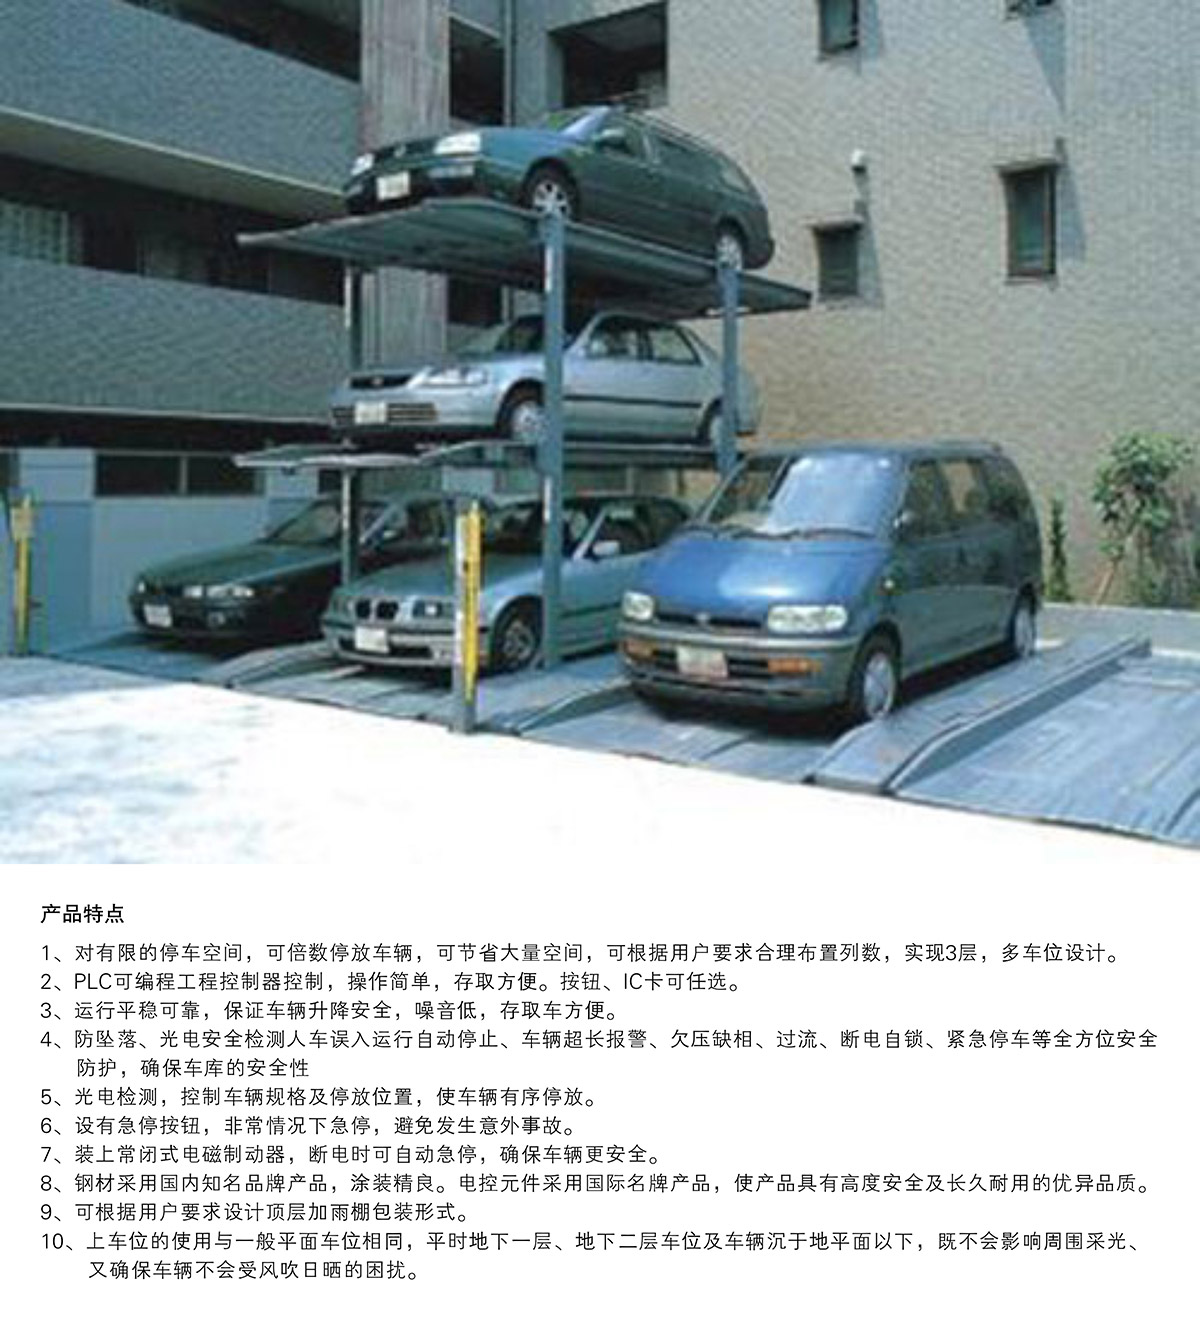 机械式停车PJS3D2三层地坑简易升降立体停车产品特点.jpg